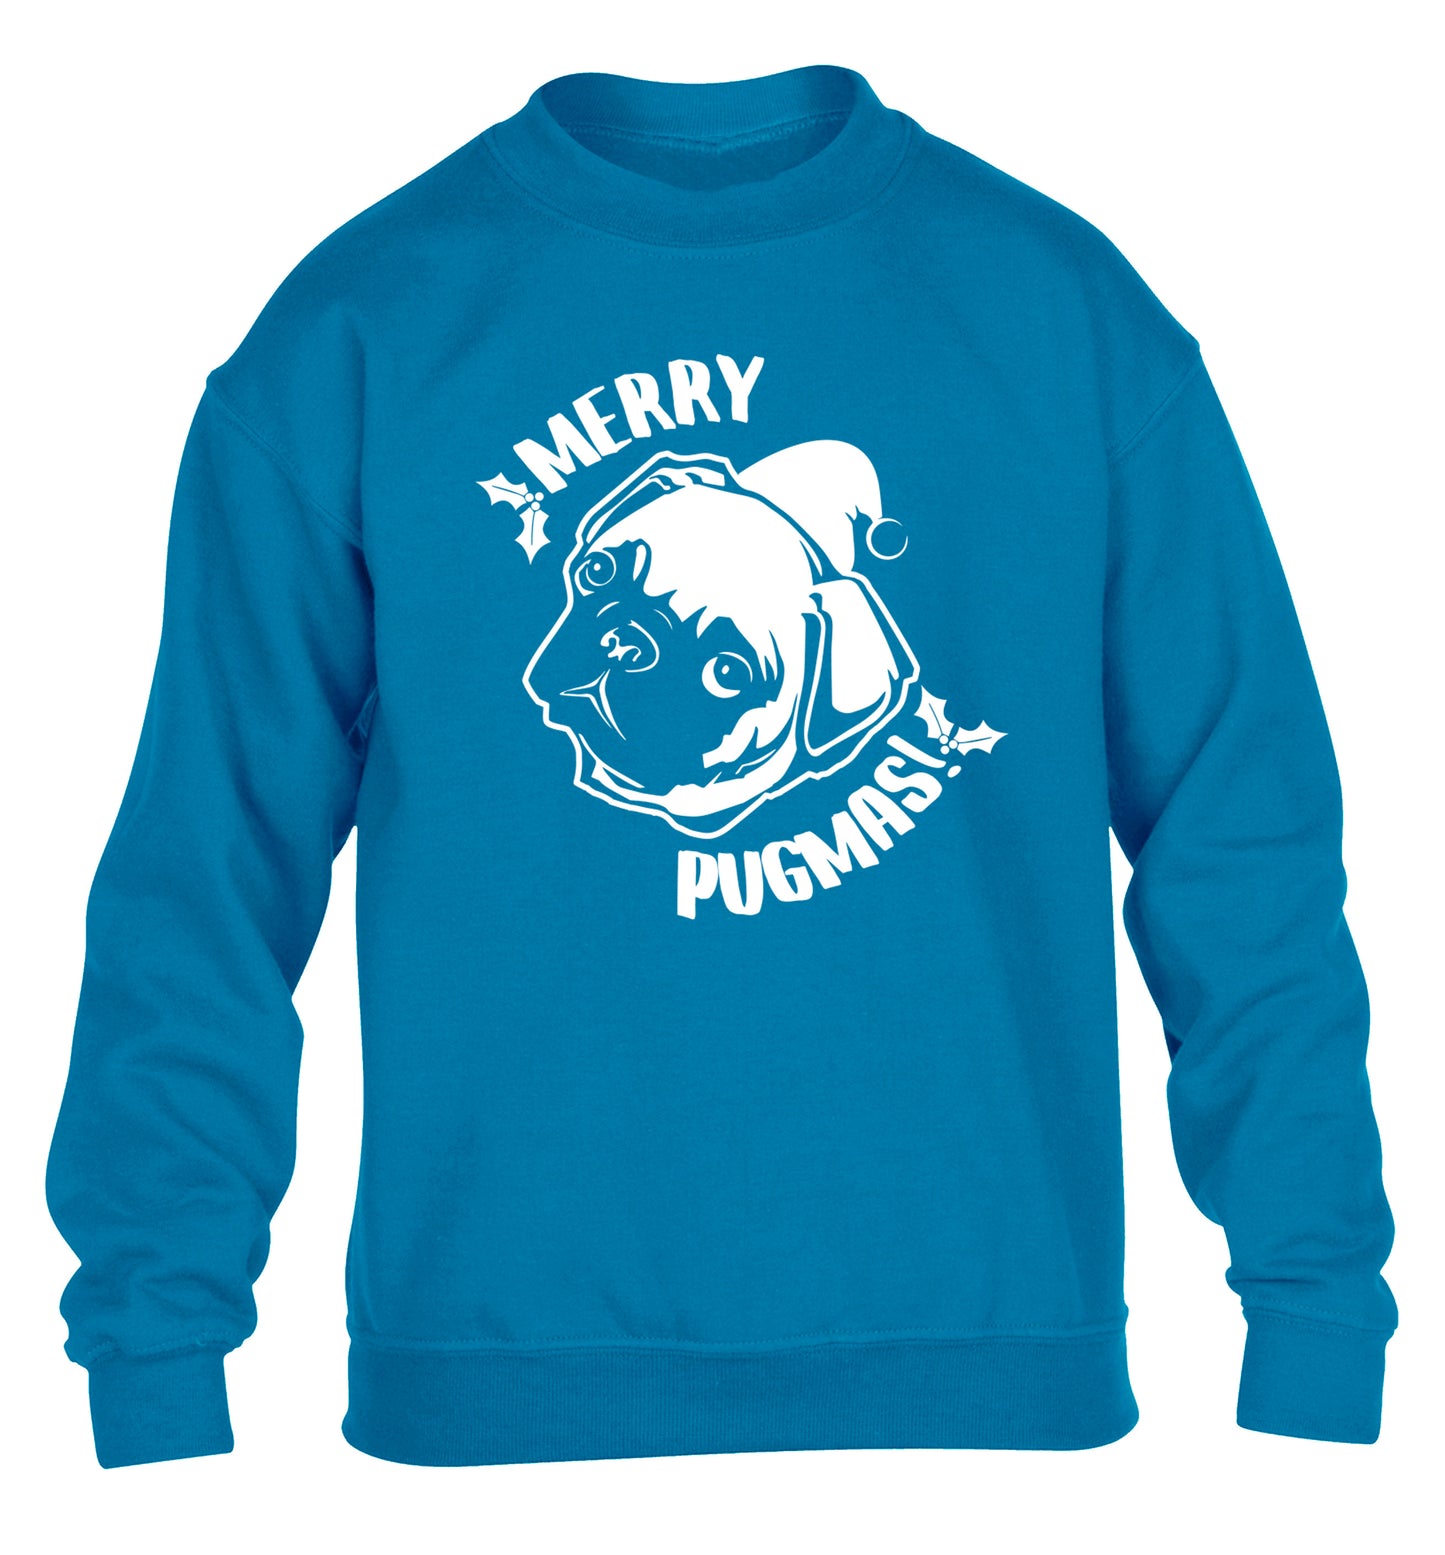 Merry Pugmas children's blue sweater 12-14 Years